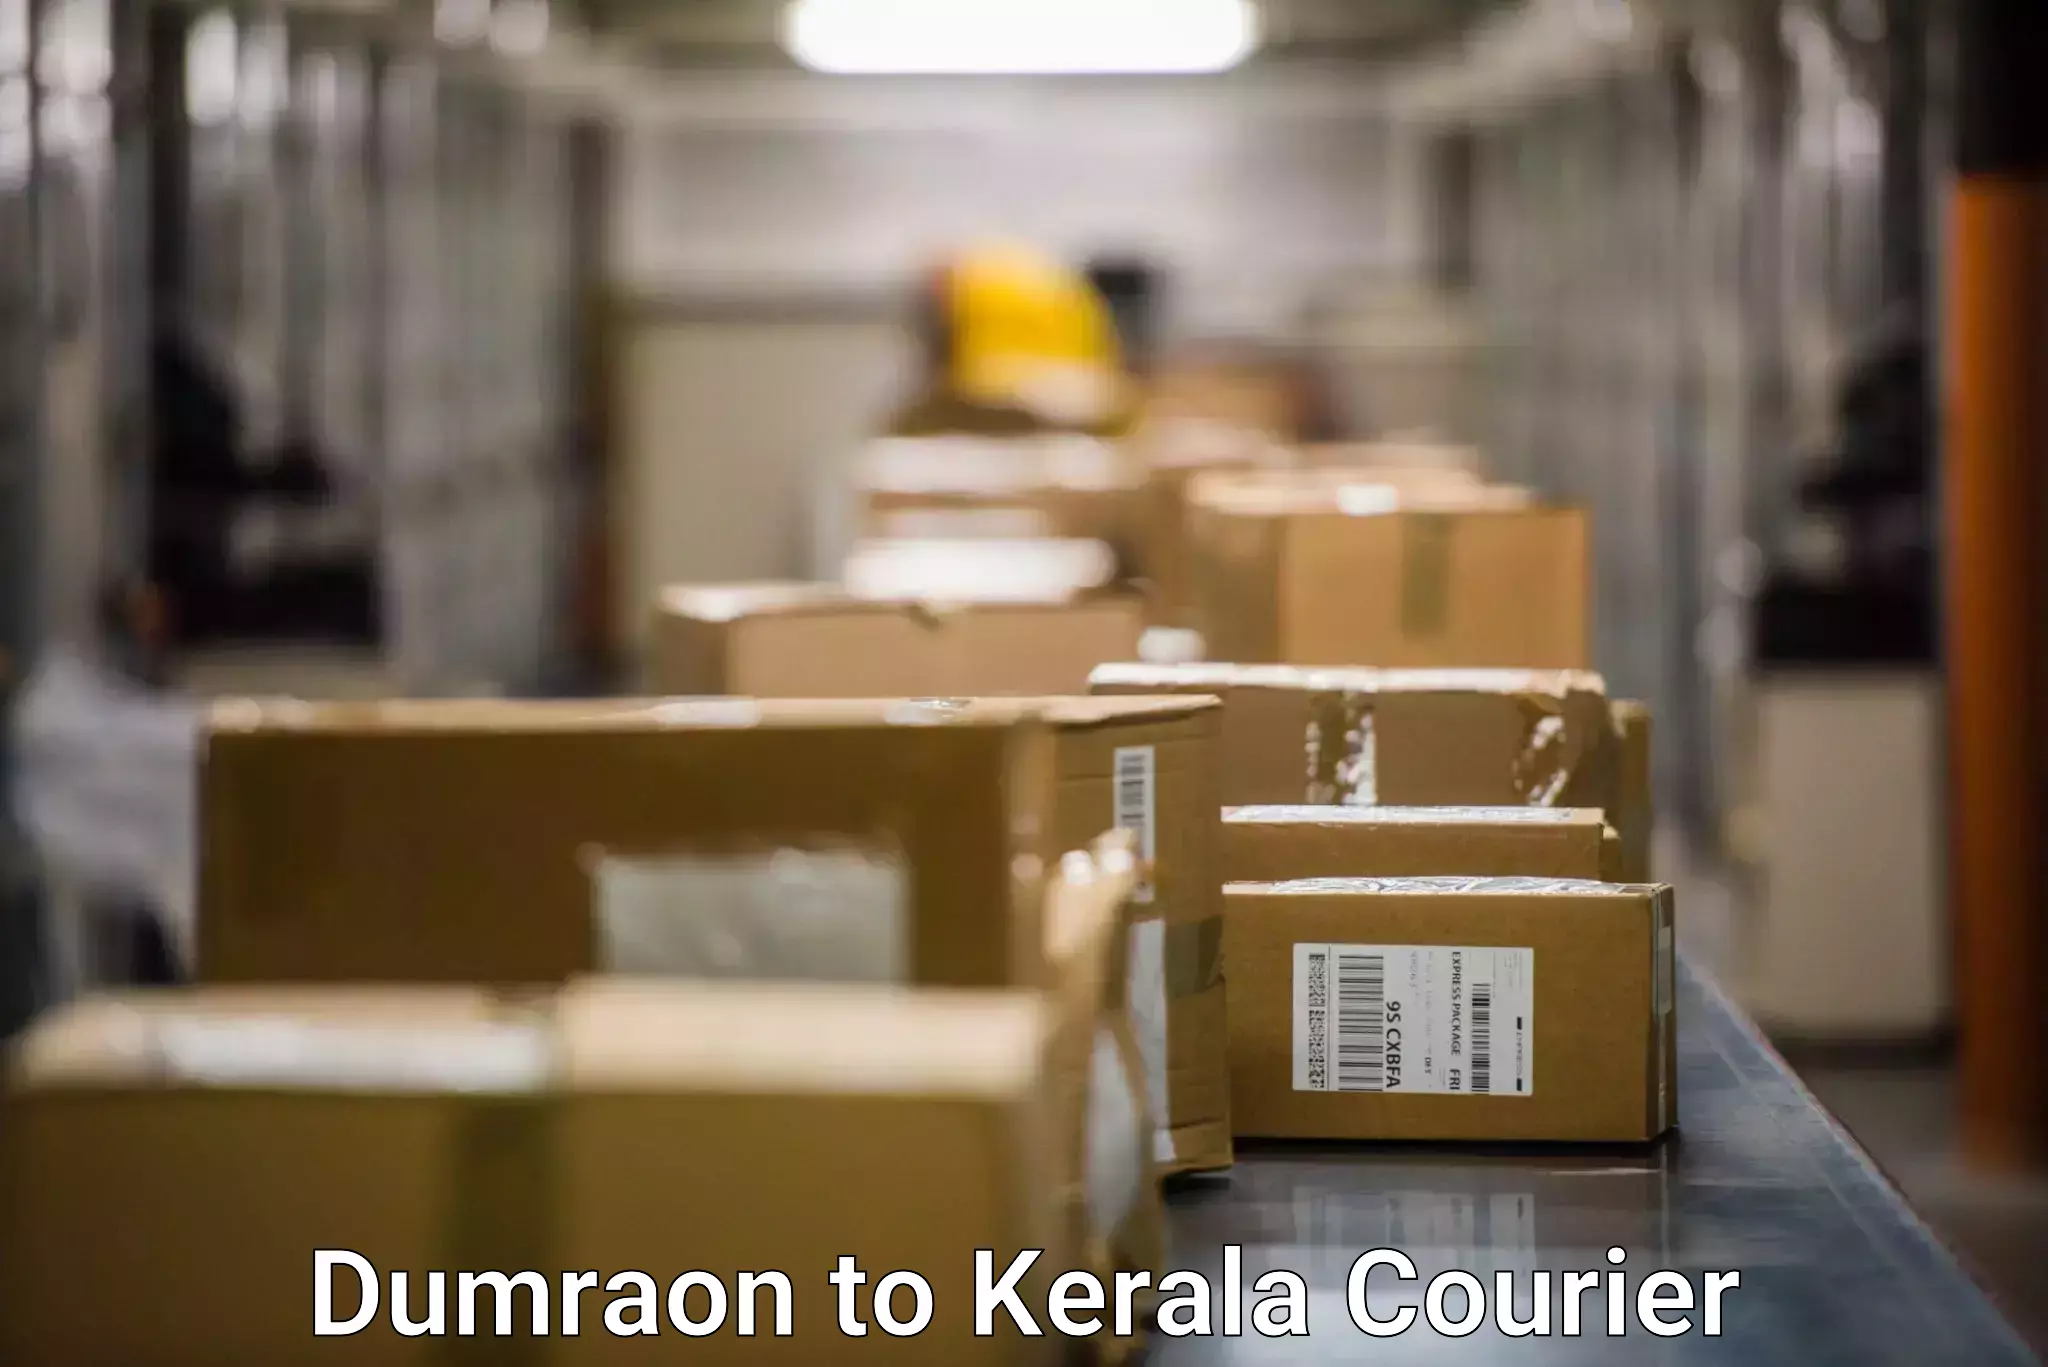 Courier insurance Dumraon to Thiruvananthapuram